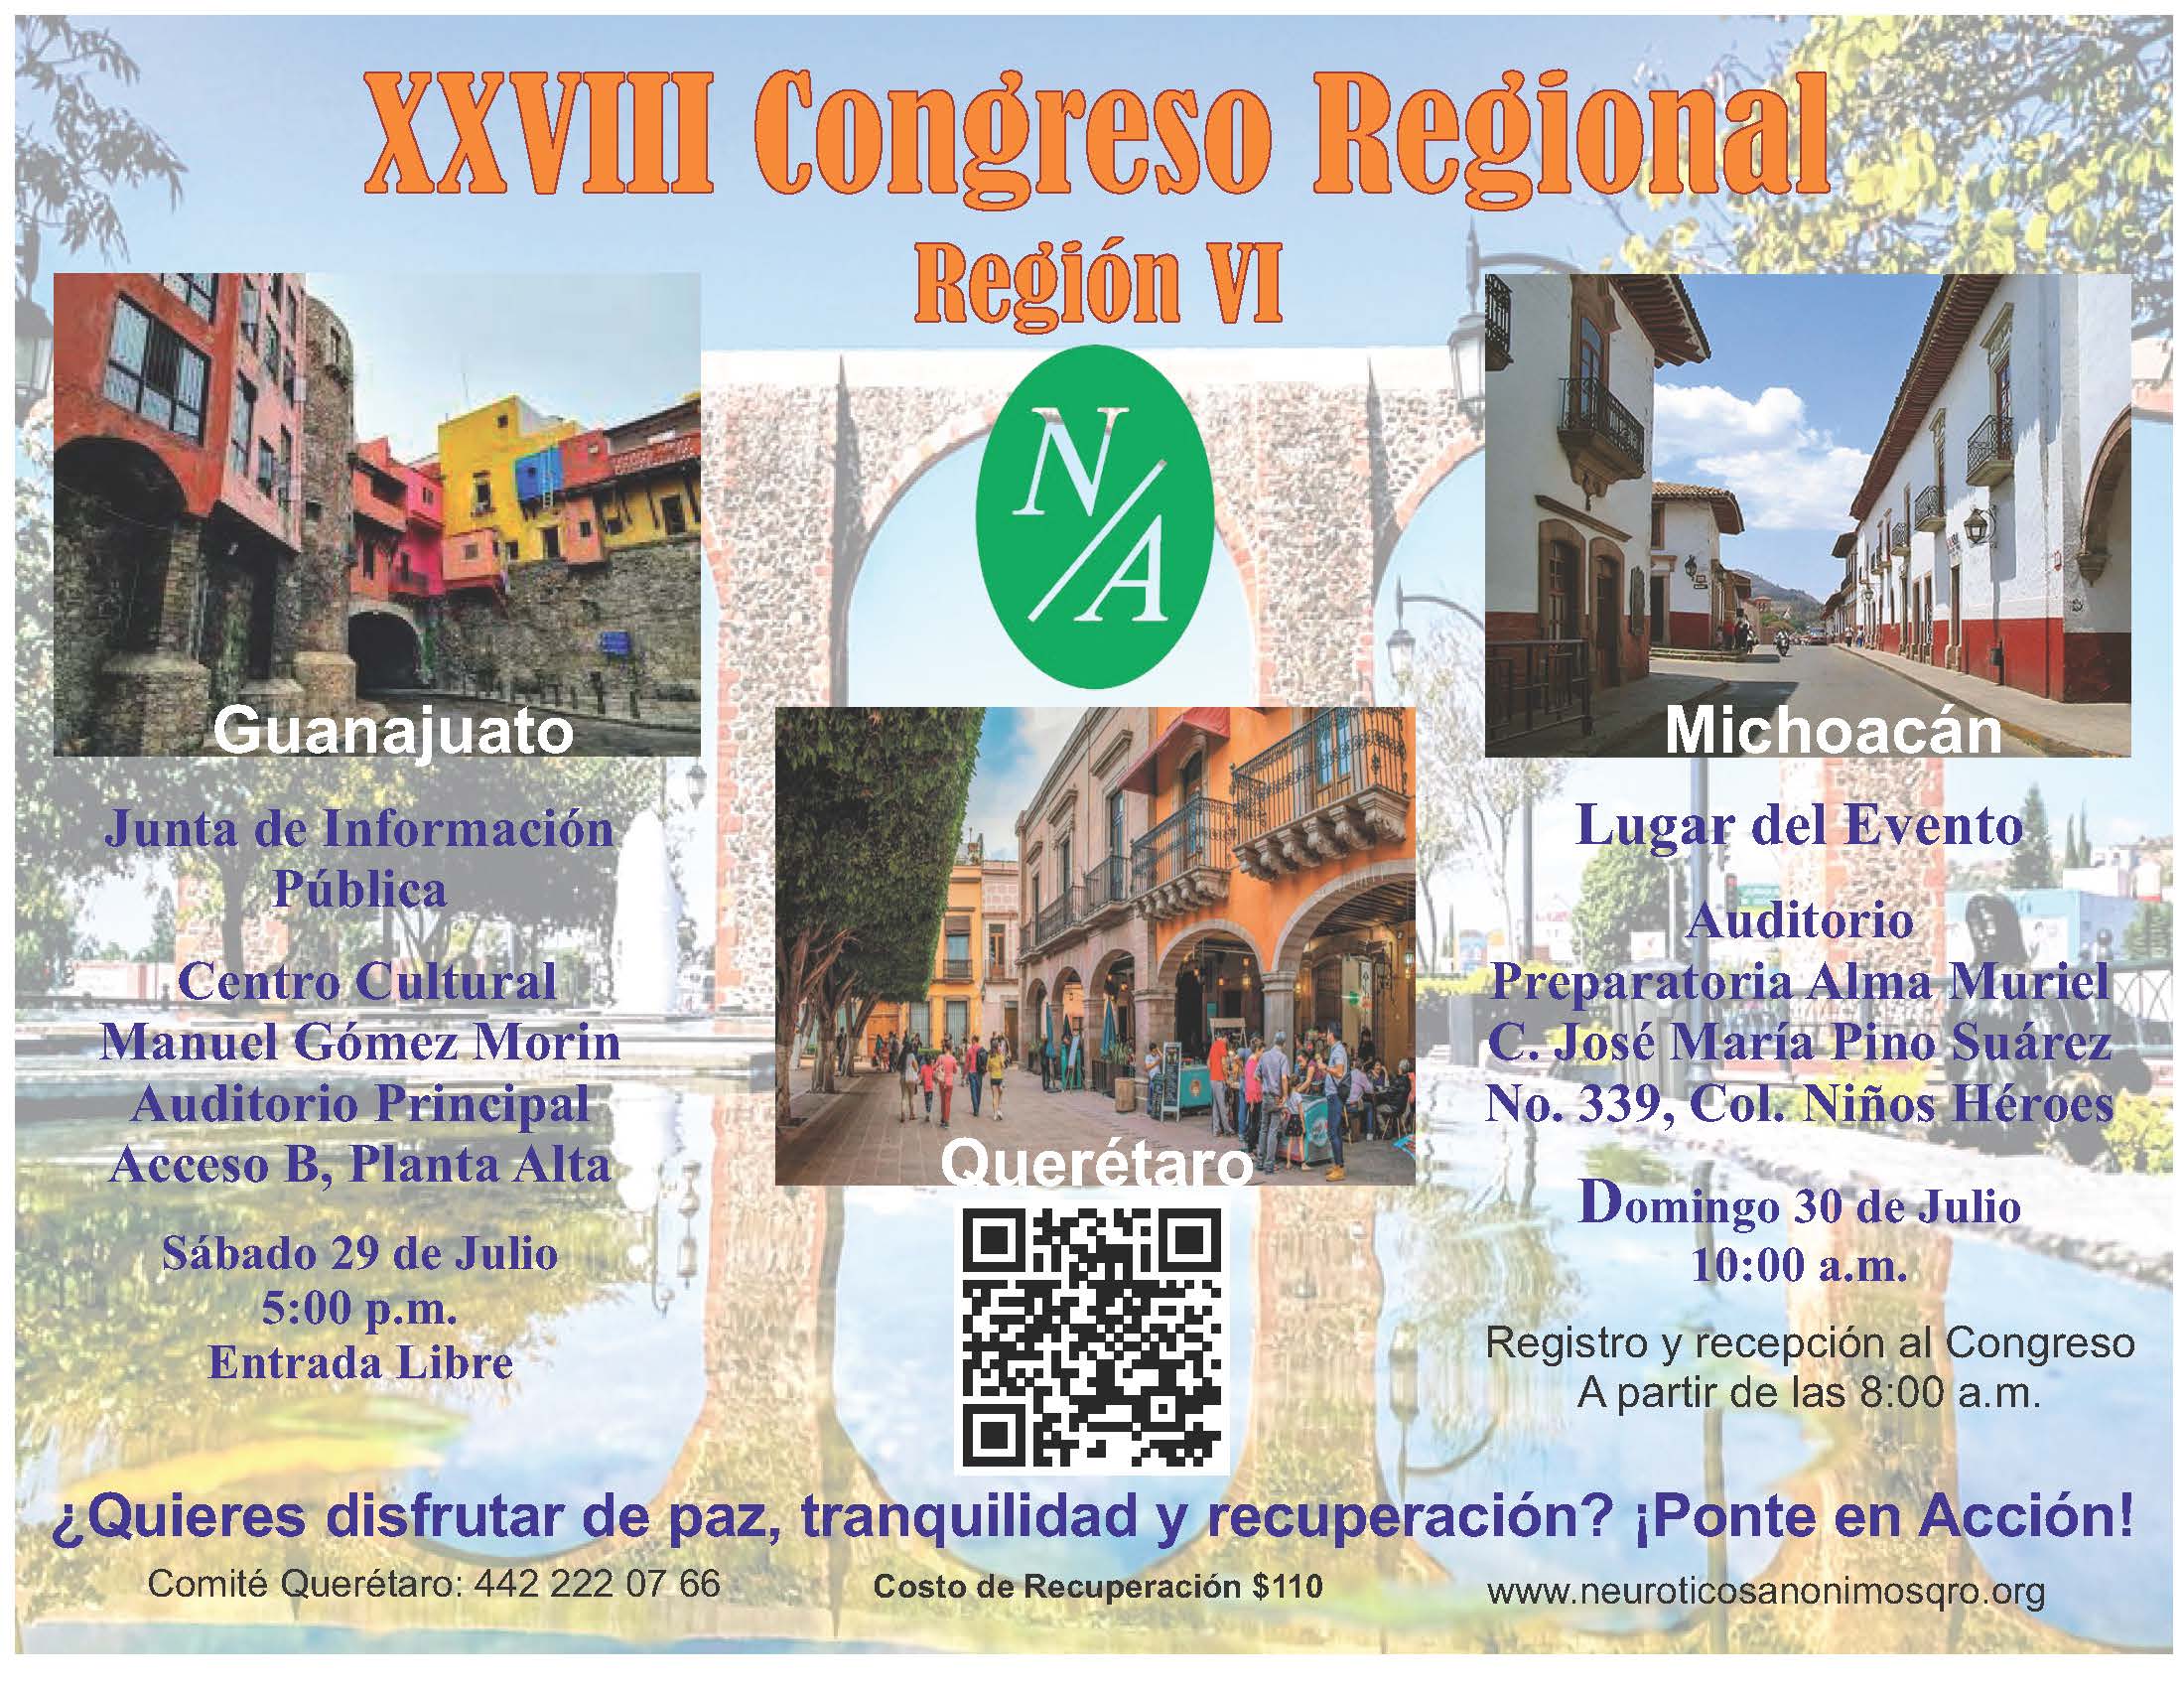 XXVIII Congreso Regional. Región VI